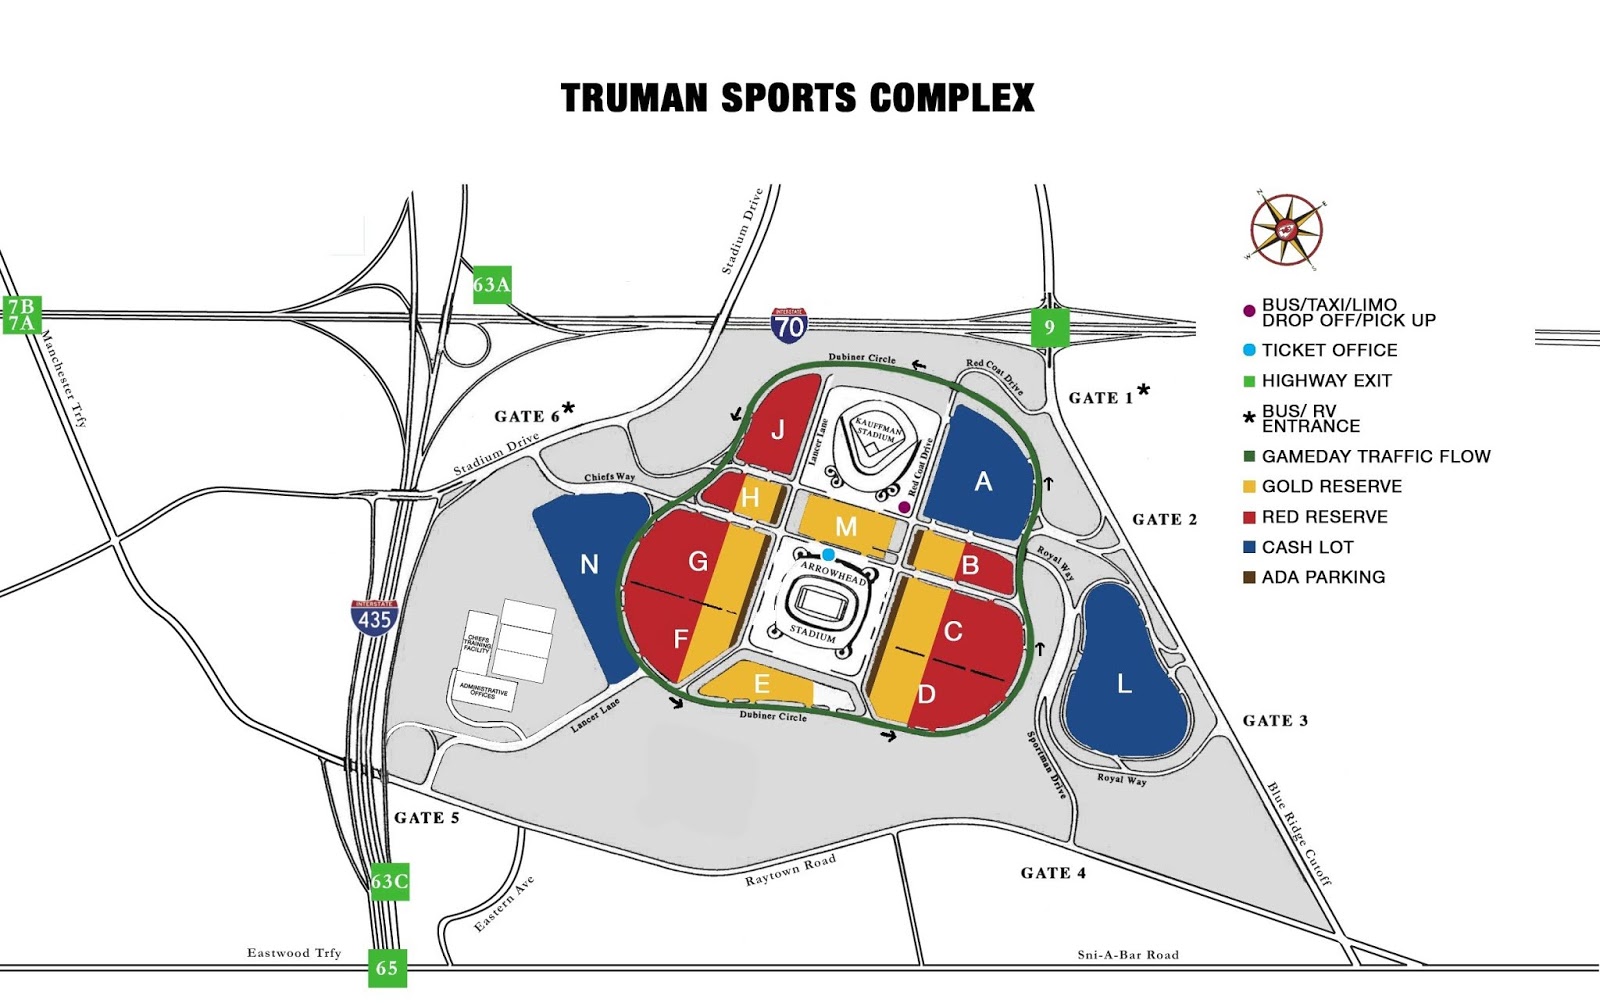 Kauffman Stadium Seating Chart